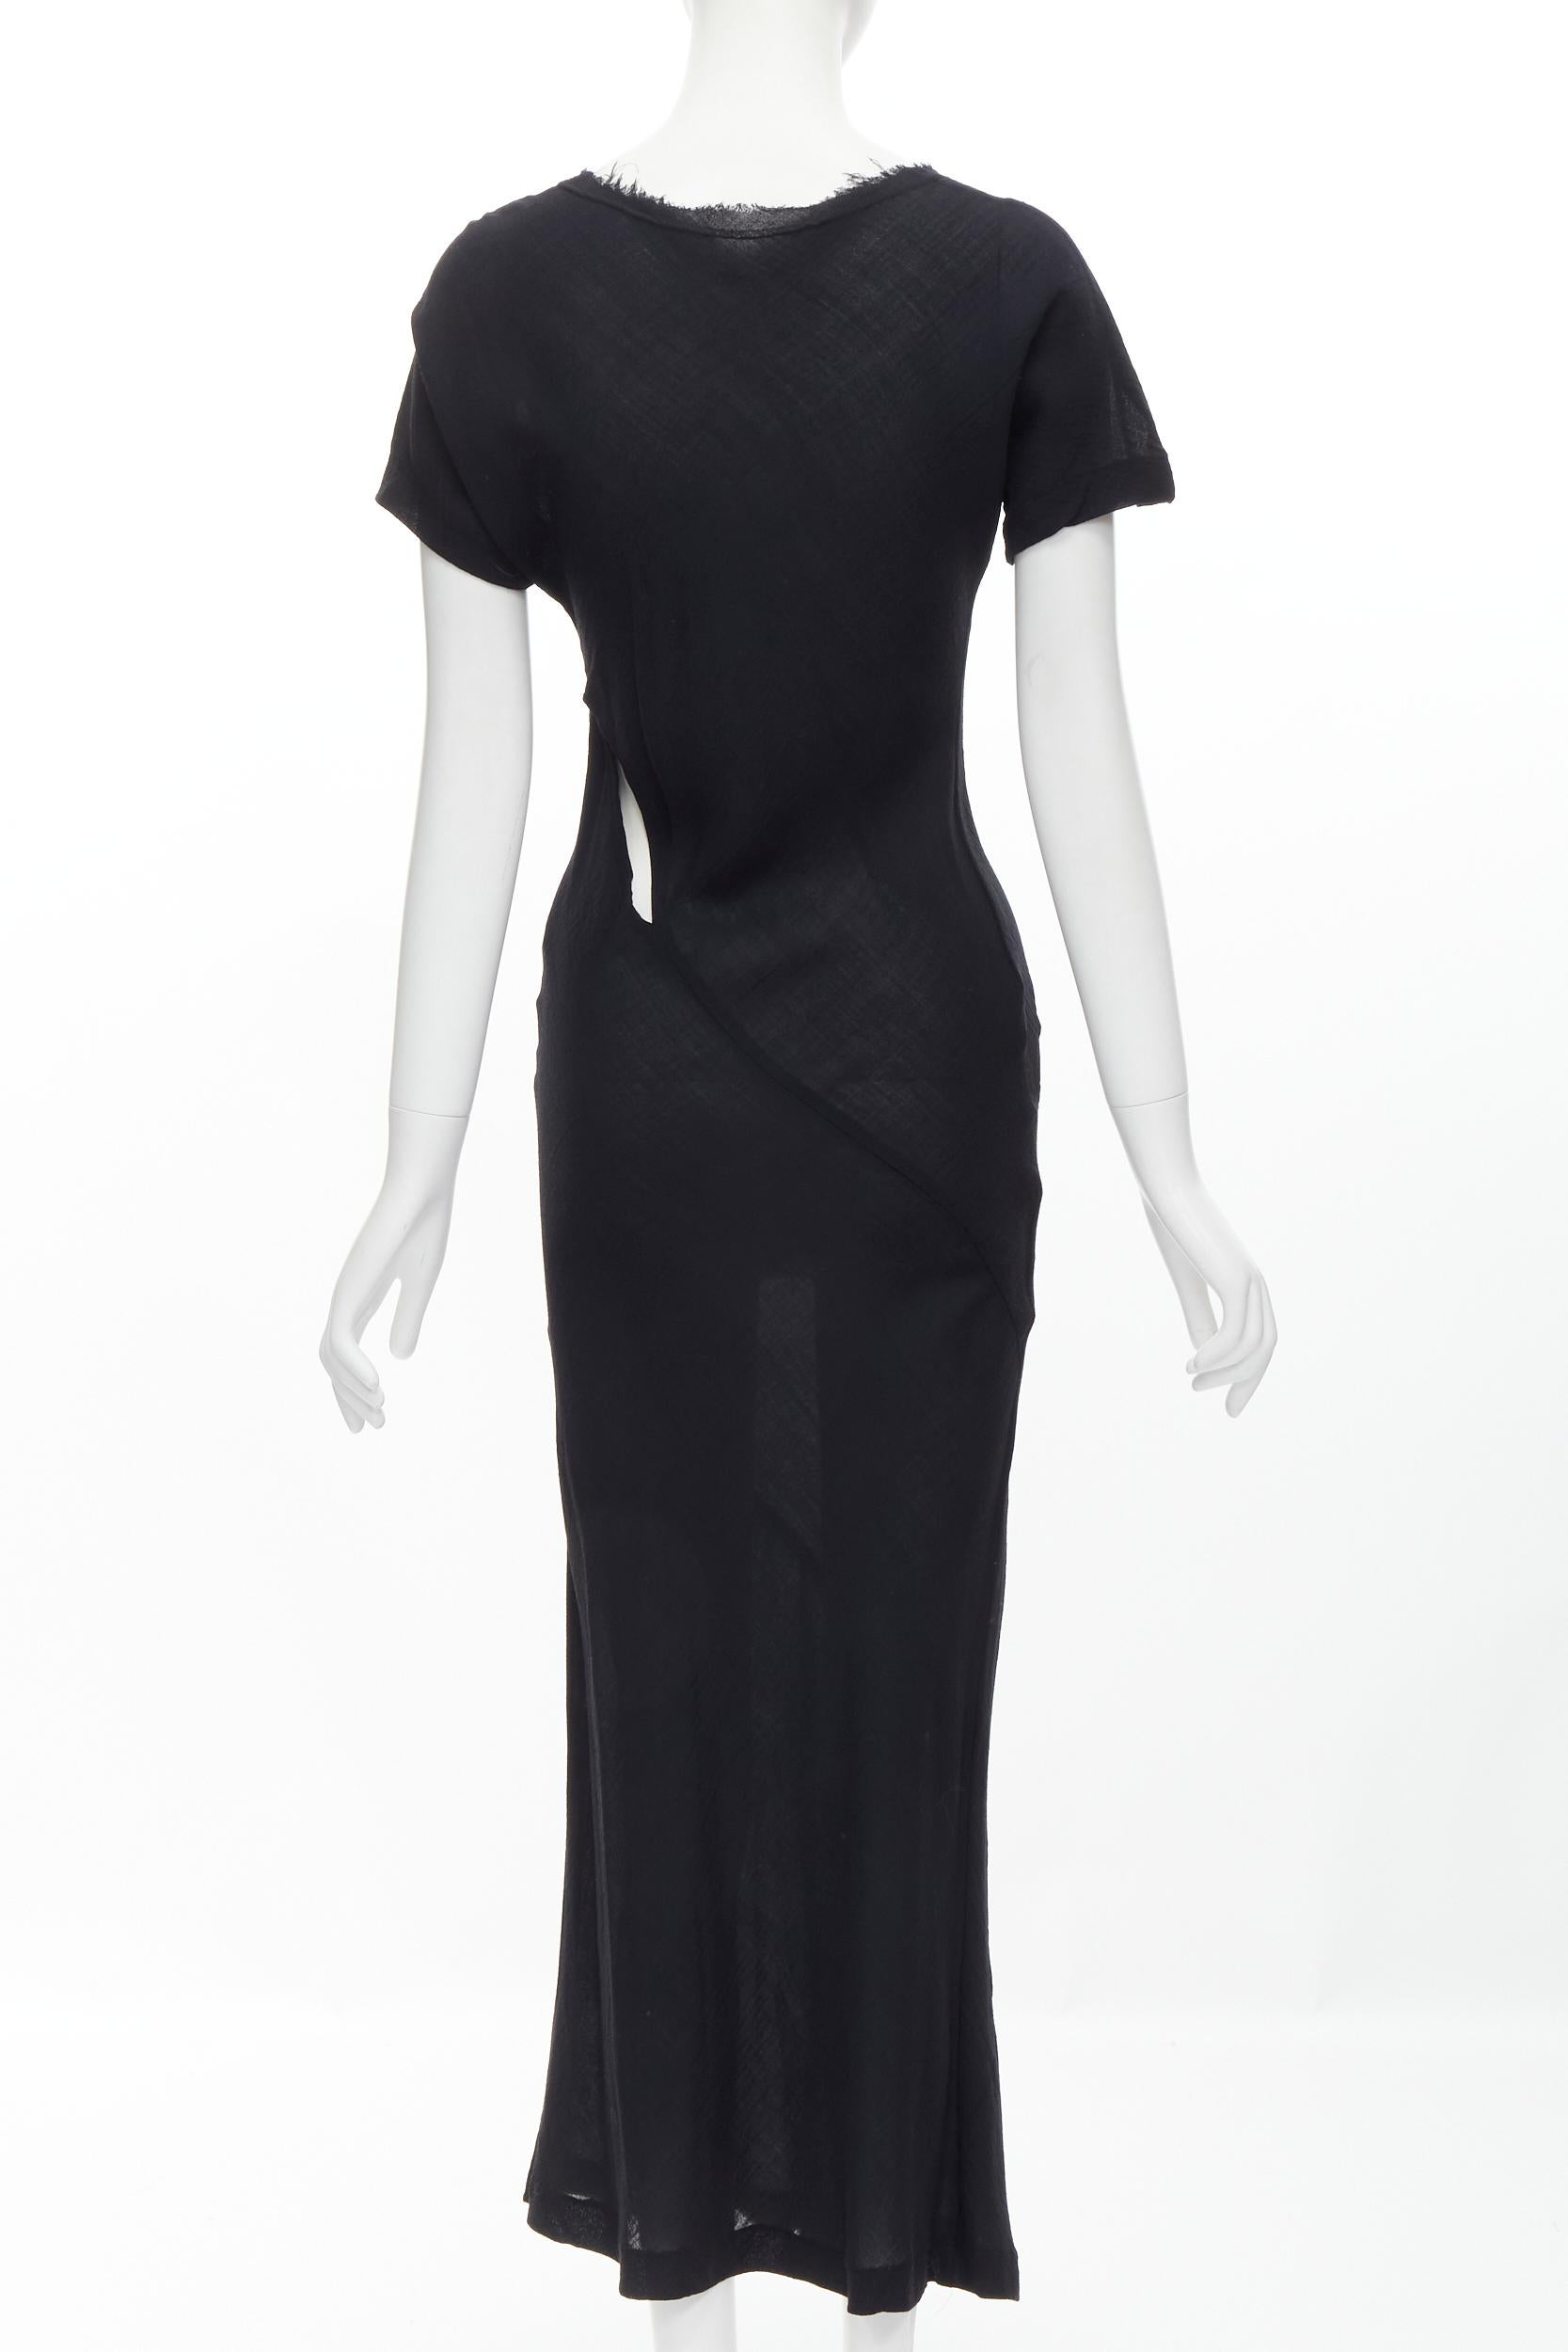 Women's vintage COMME DES GARCONS 1993 black wool frayed edge slash bias cut dress